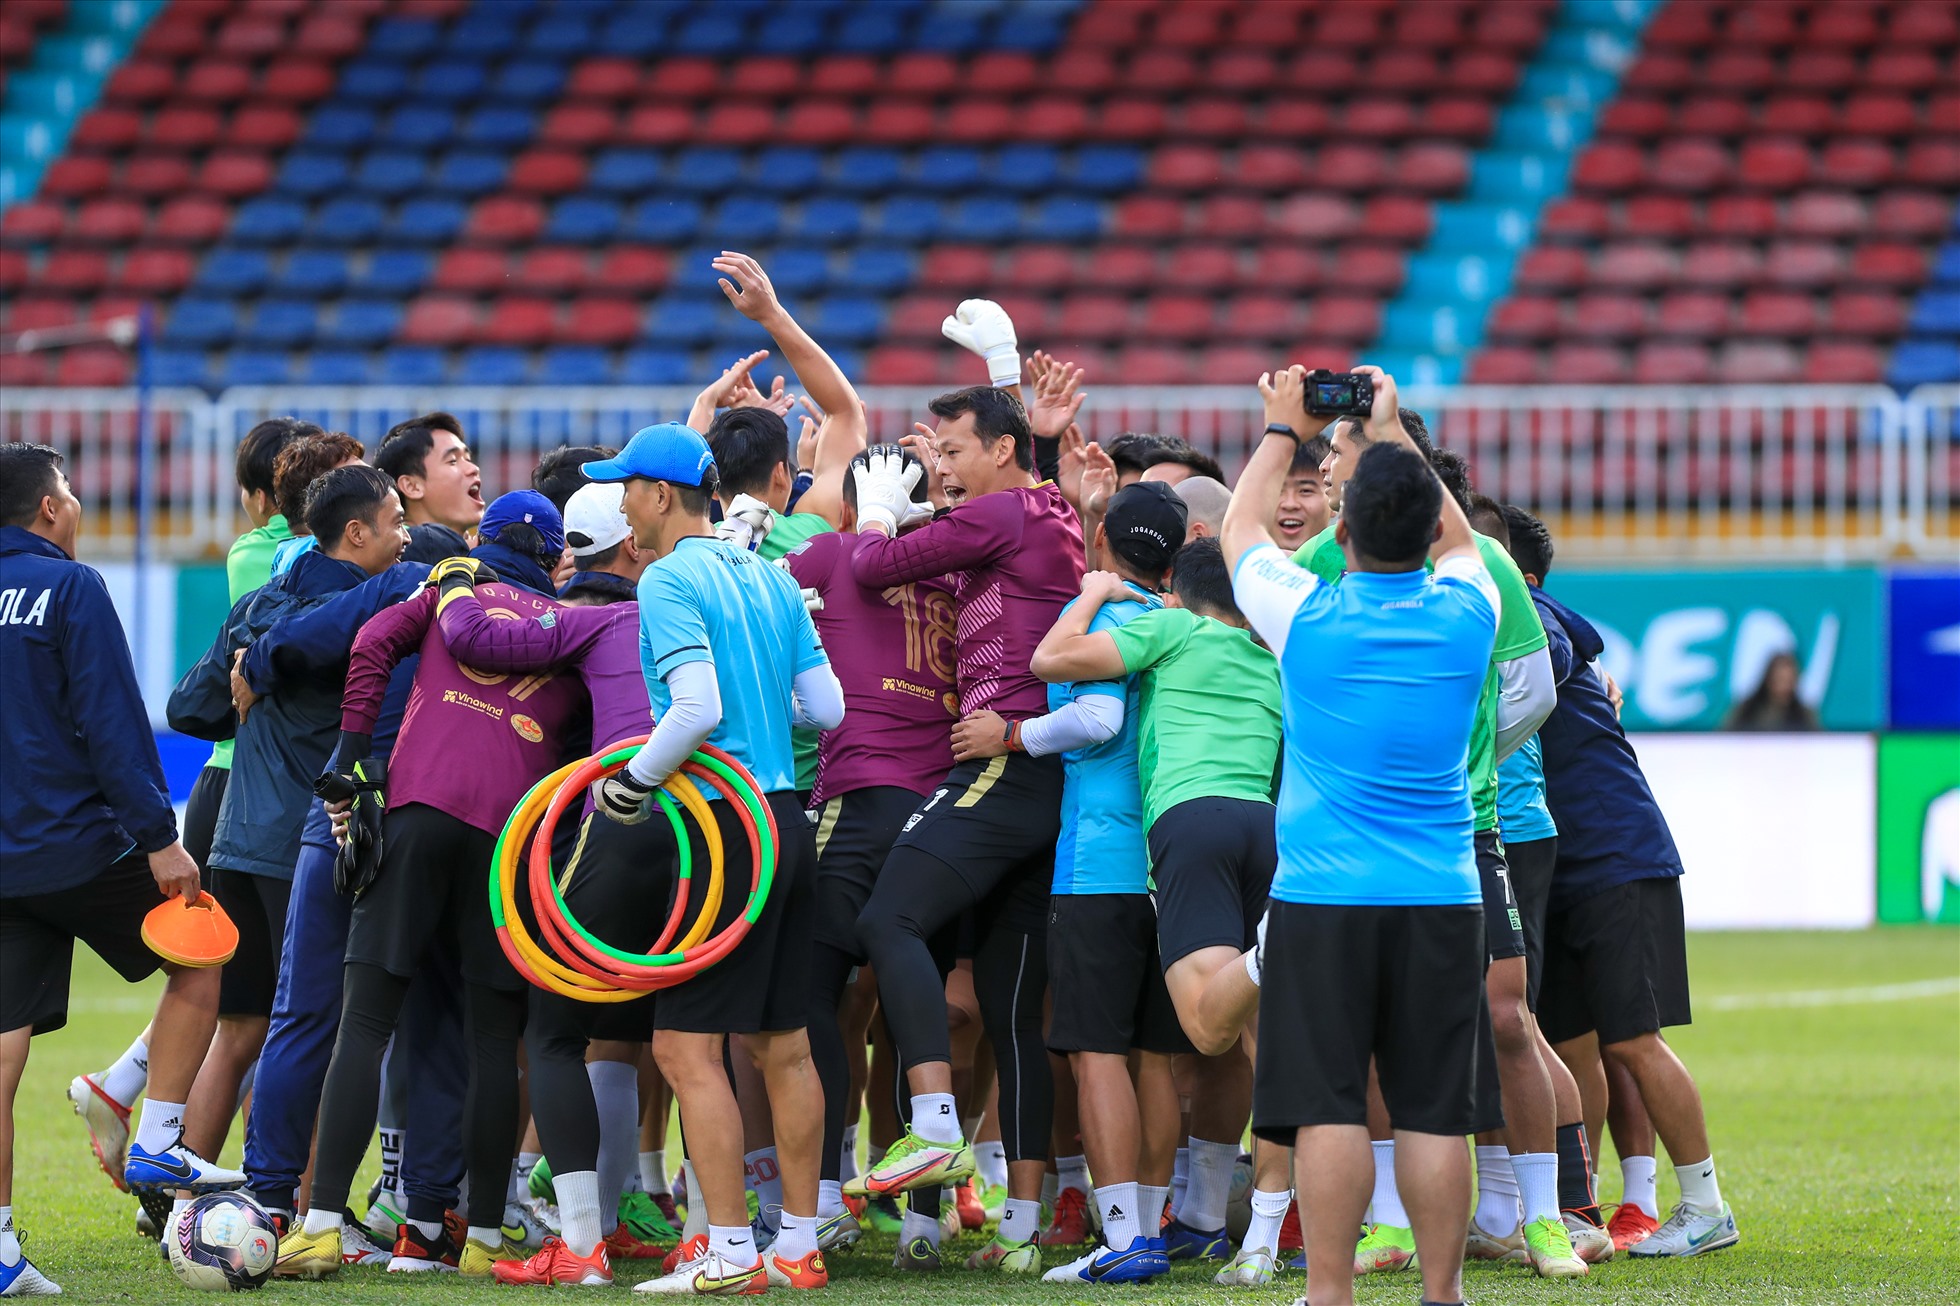 Câu lạc bộ Hà Nội thể hiện sự quyết tâm, đoàn kết trong buổi tập chiều nay (22.11) chuẩn bị cho trận đấu gặp câu lạc bộ Hoàng Anh Gia Lai tại bán kết cúp quốc gia 2022.